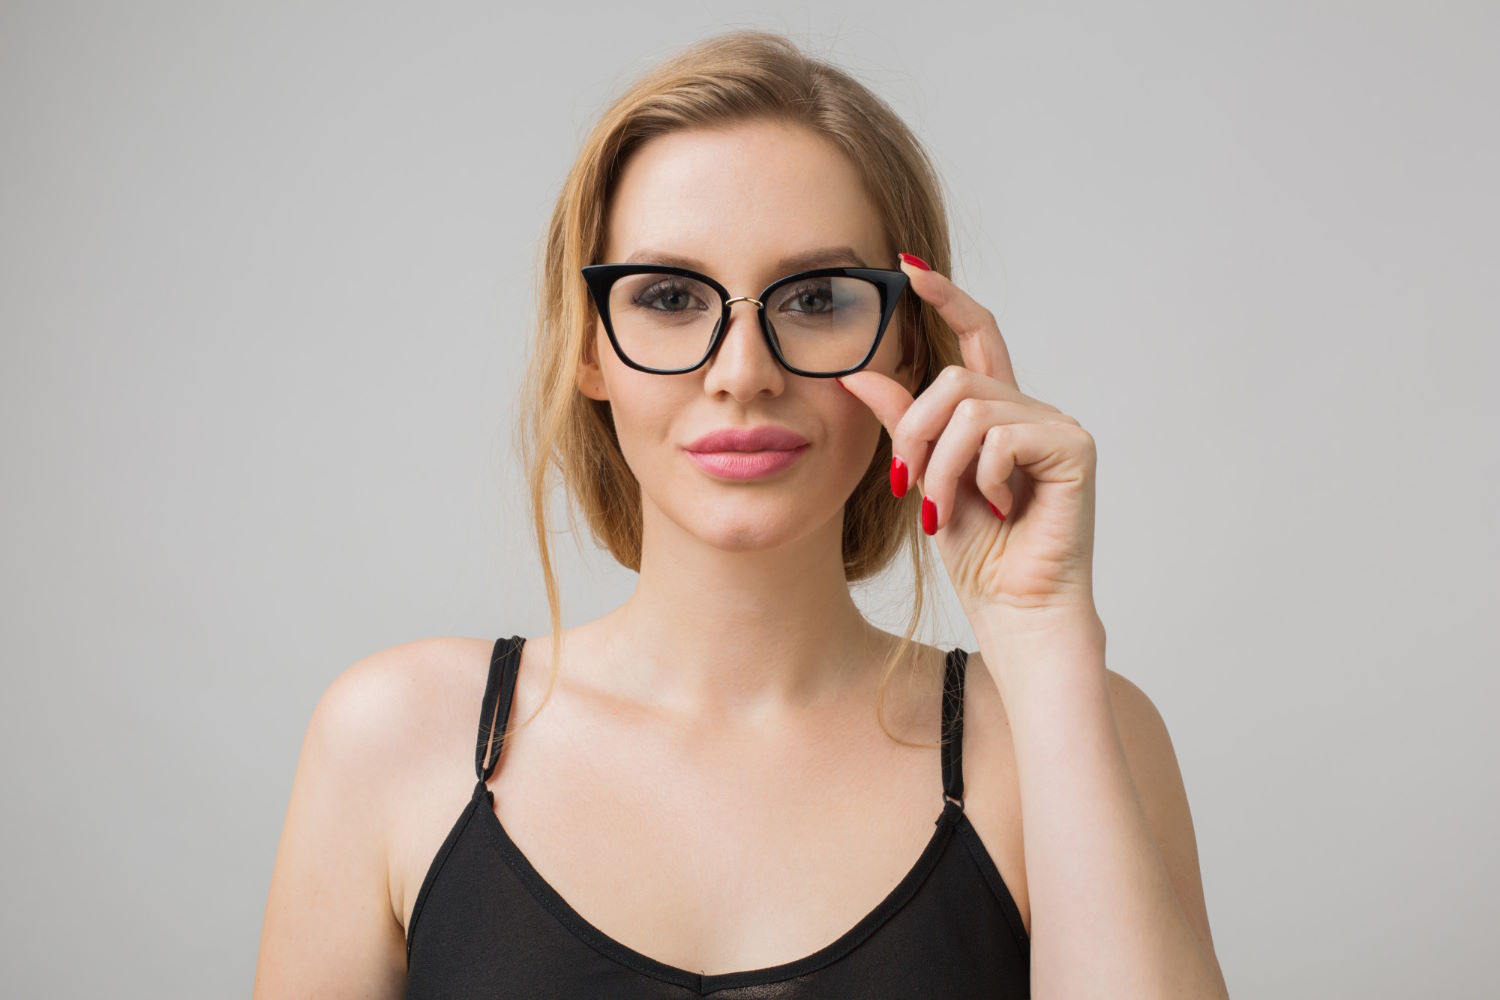 Nowoczesne okulary dla osób z wadą wzroku – unikalne oprawki do wyboru